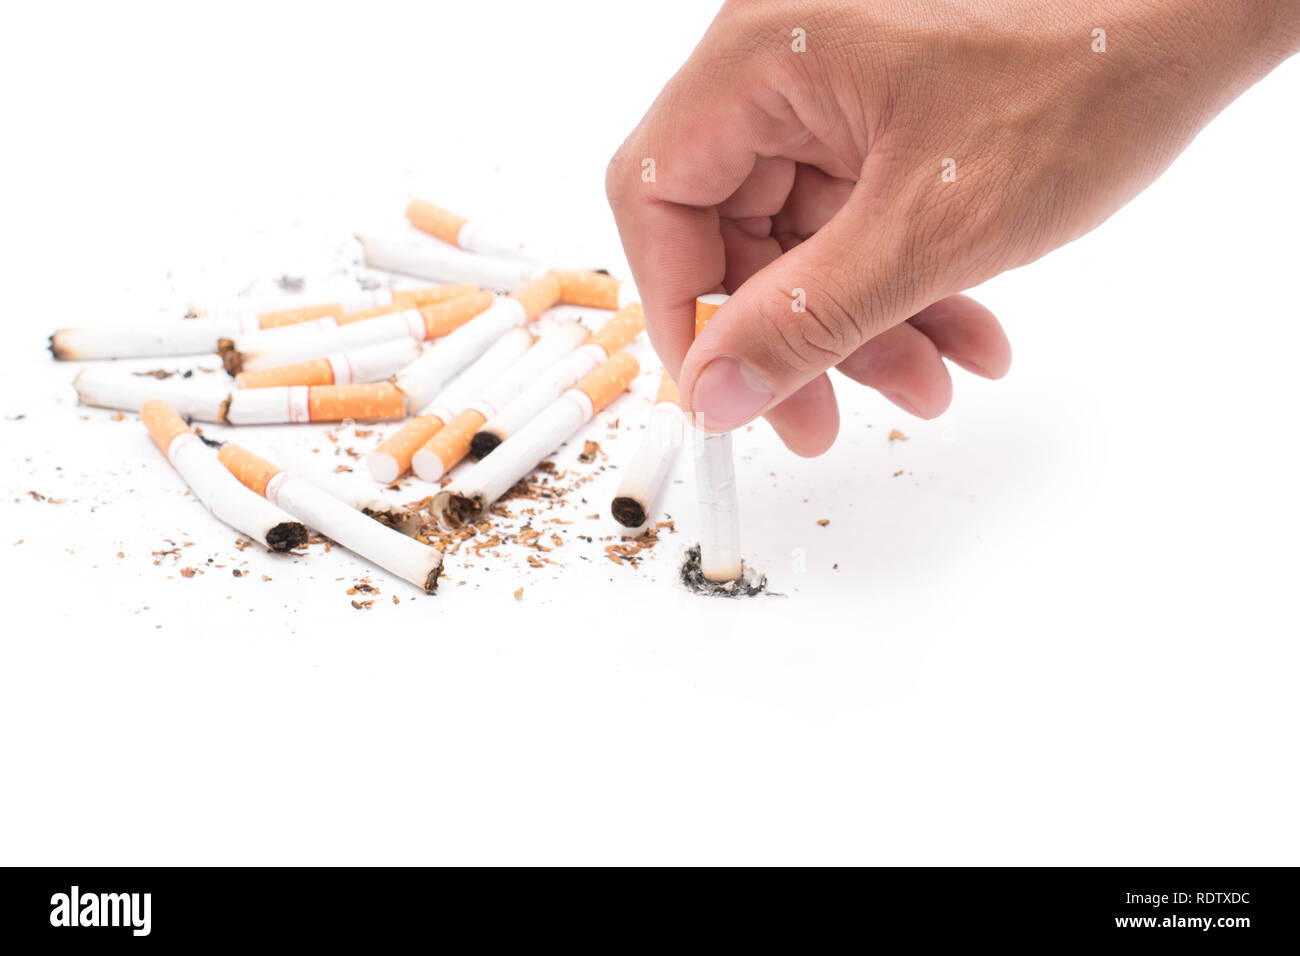 Uomo di distruggere una sigaretta in mano il concetto di rifiutare cattiva abitudine, isolato su sfondo bianco Foto Stock